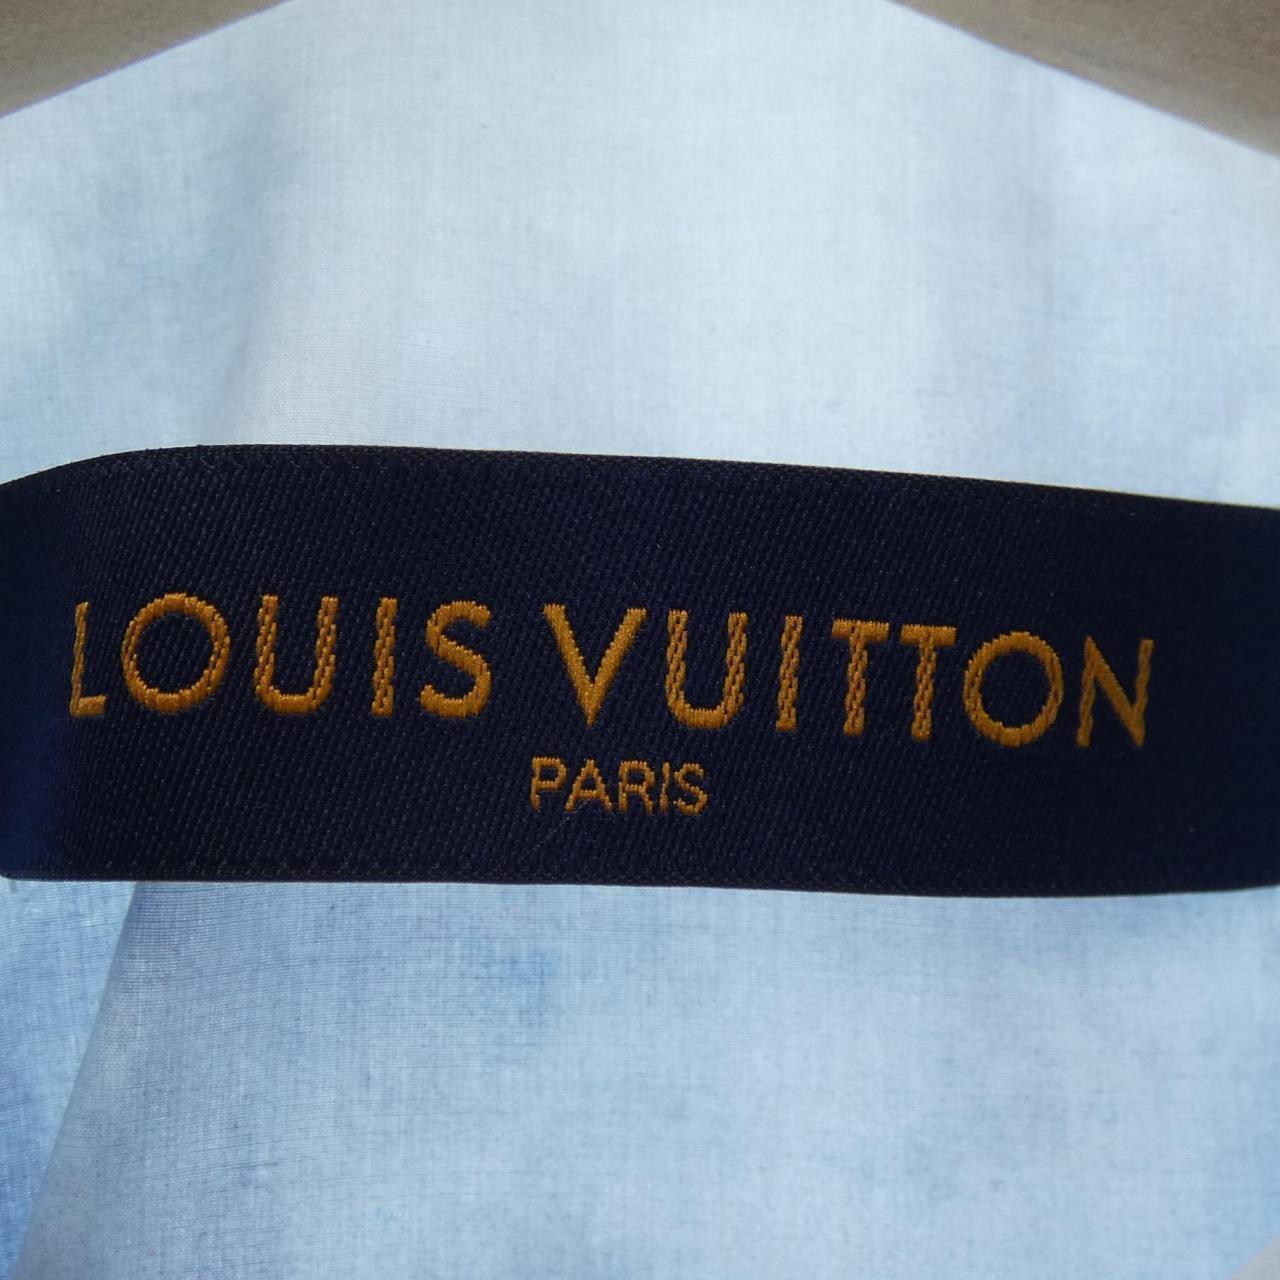 Authentic LOUIS VUITTON Tshirt #241-003-210-6447